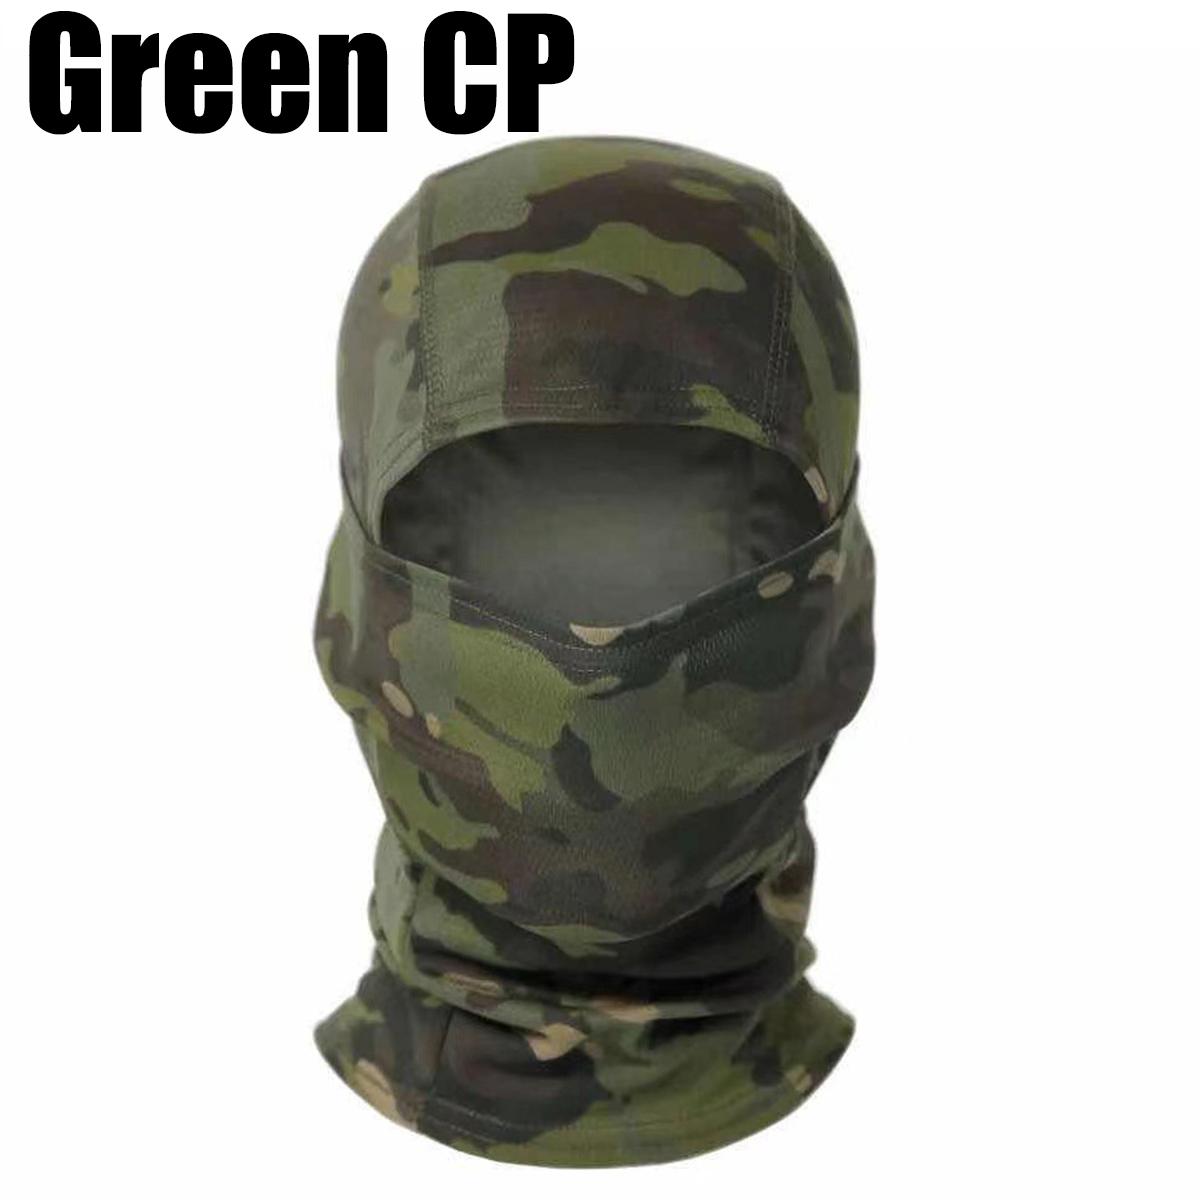 Balaclava Ski Camouflage Neck Face Mask